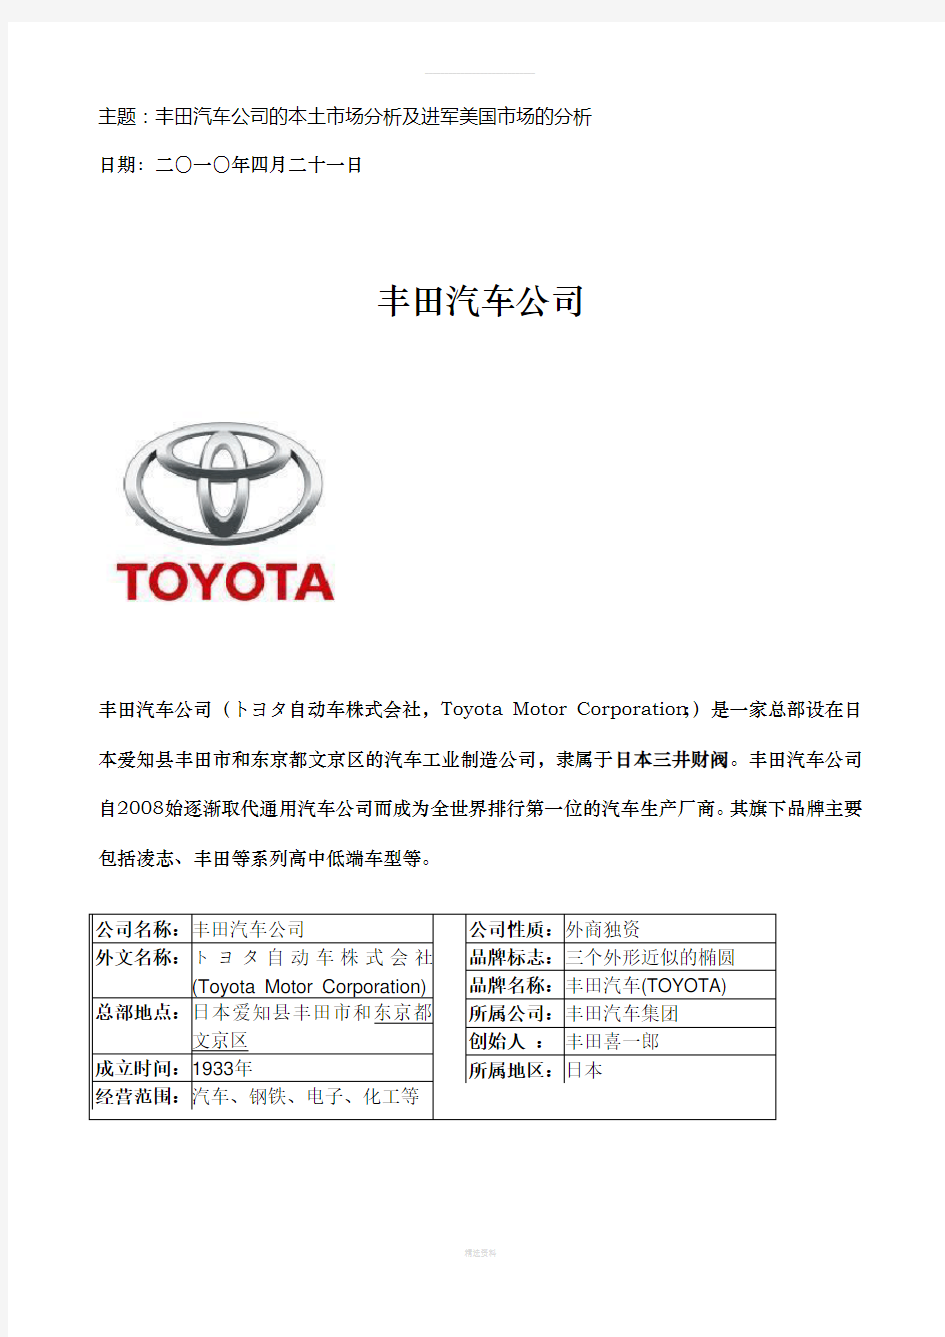 丰田汽车公司进军美国市场的分析报告